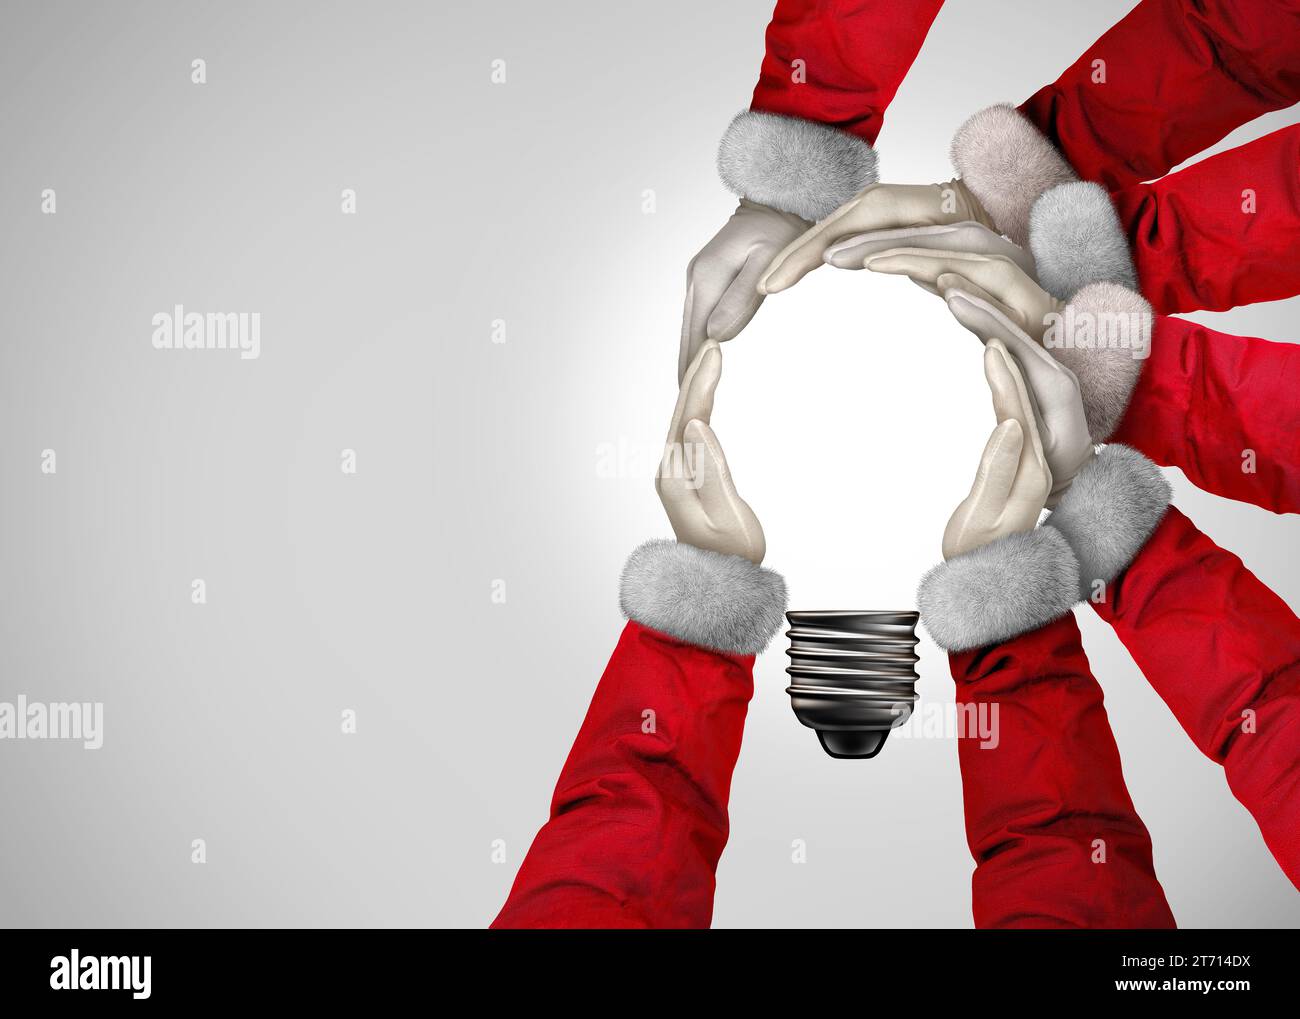 Weihnachtsideen als eine Gruppe von Weihnachtsleuten, die sich in Form einer inspirierenden Glühbirne als Silvester-Winterferien zusammenschließen Stockfoto